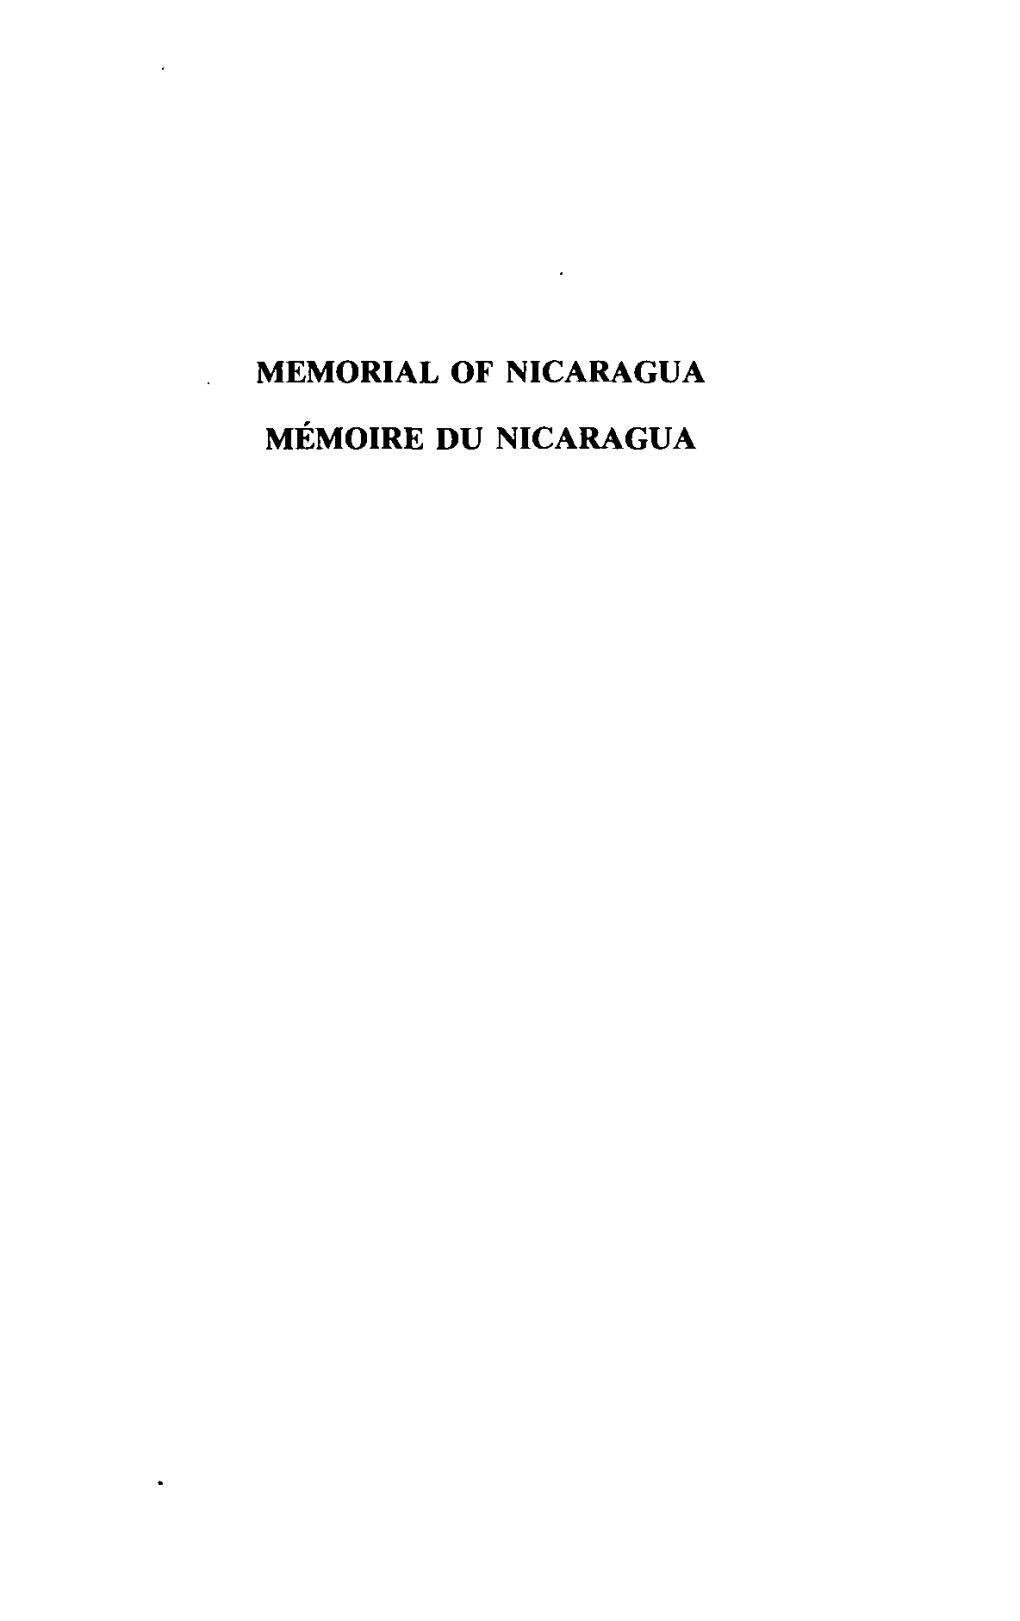 Memorial of Nicaragua